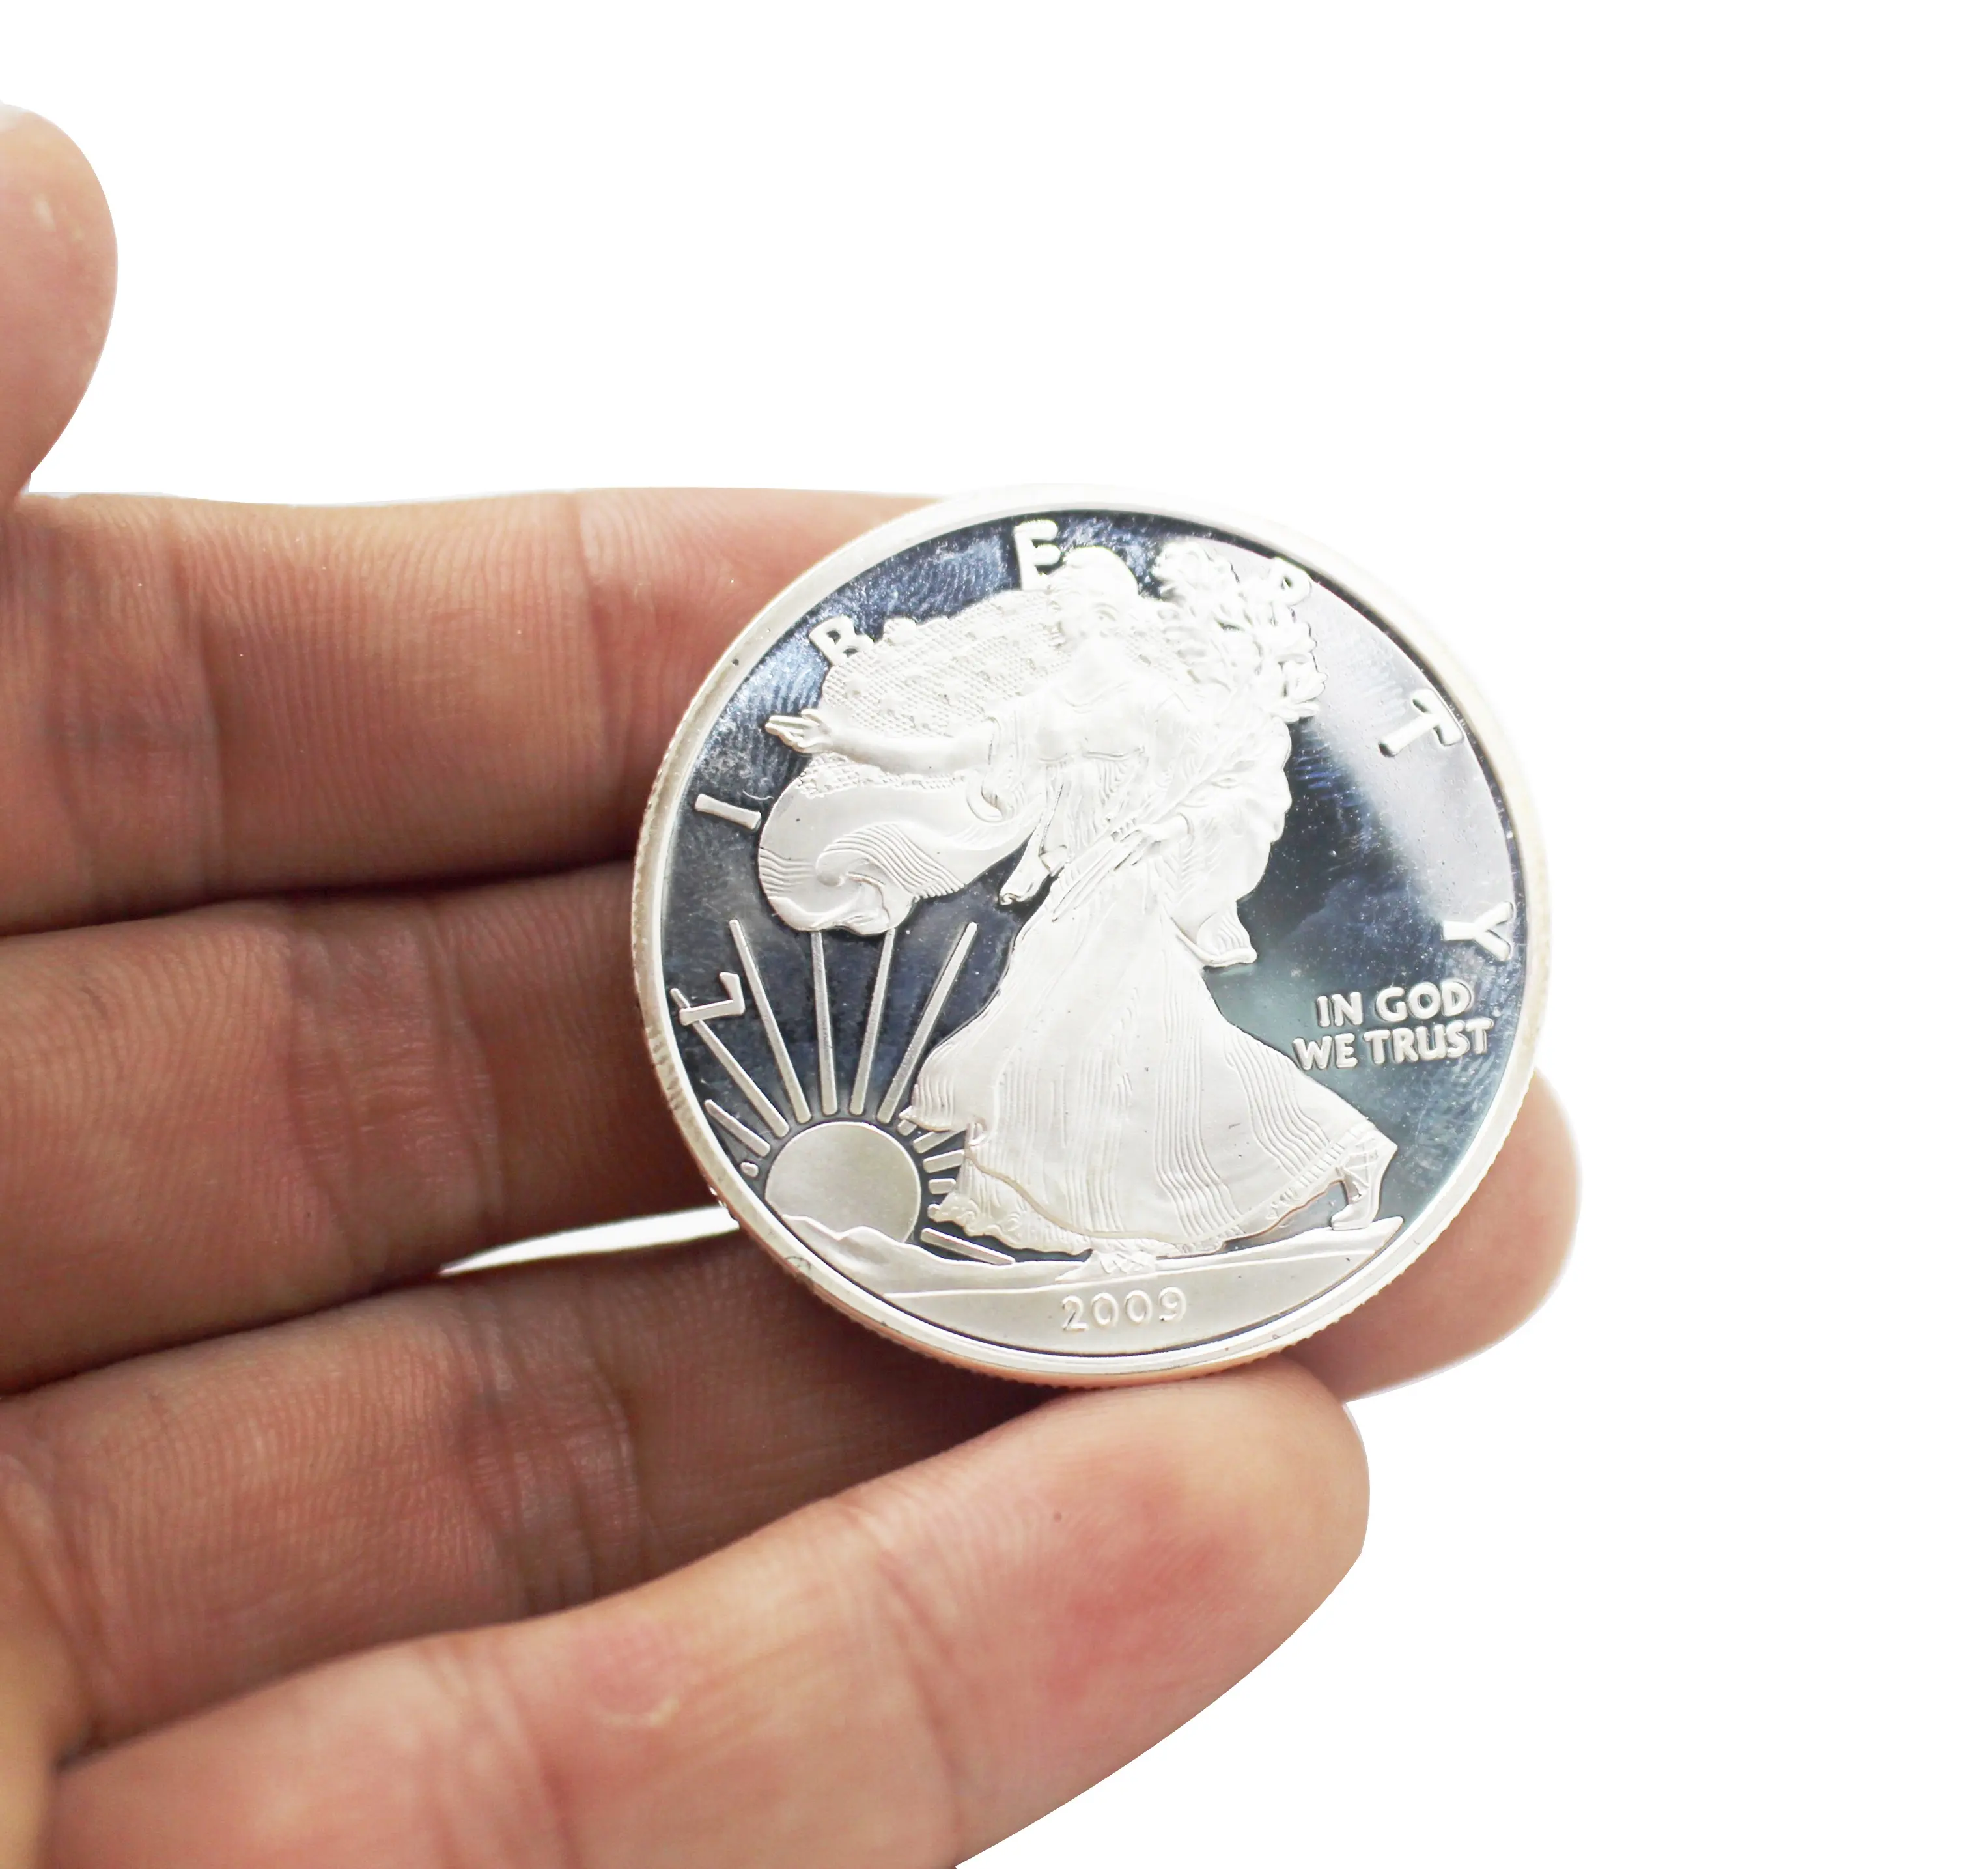 En relieve monedas de plata de Metal personalizado fichas recuerdo con caja de plástico